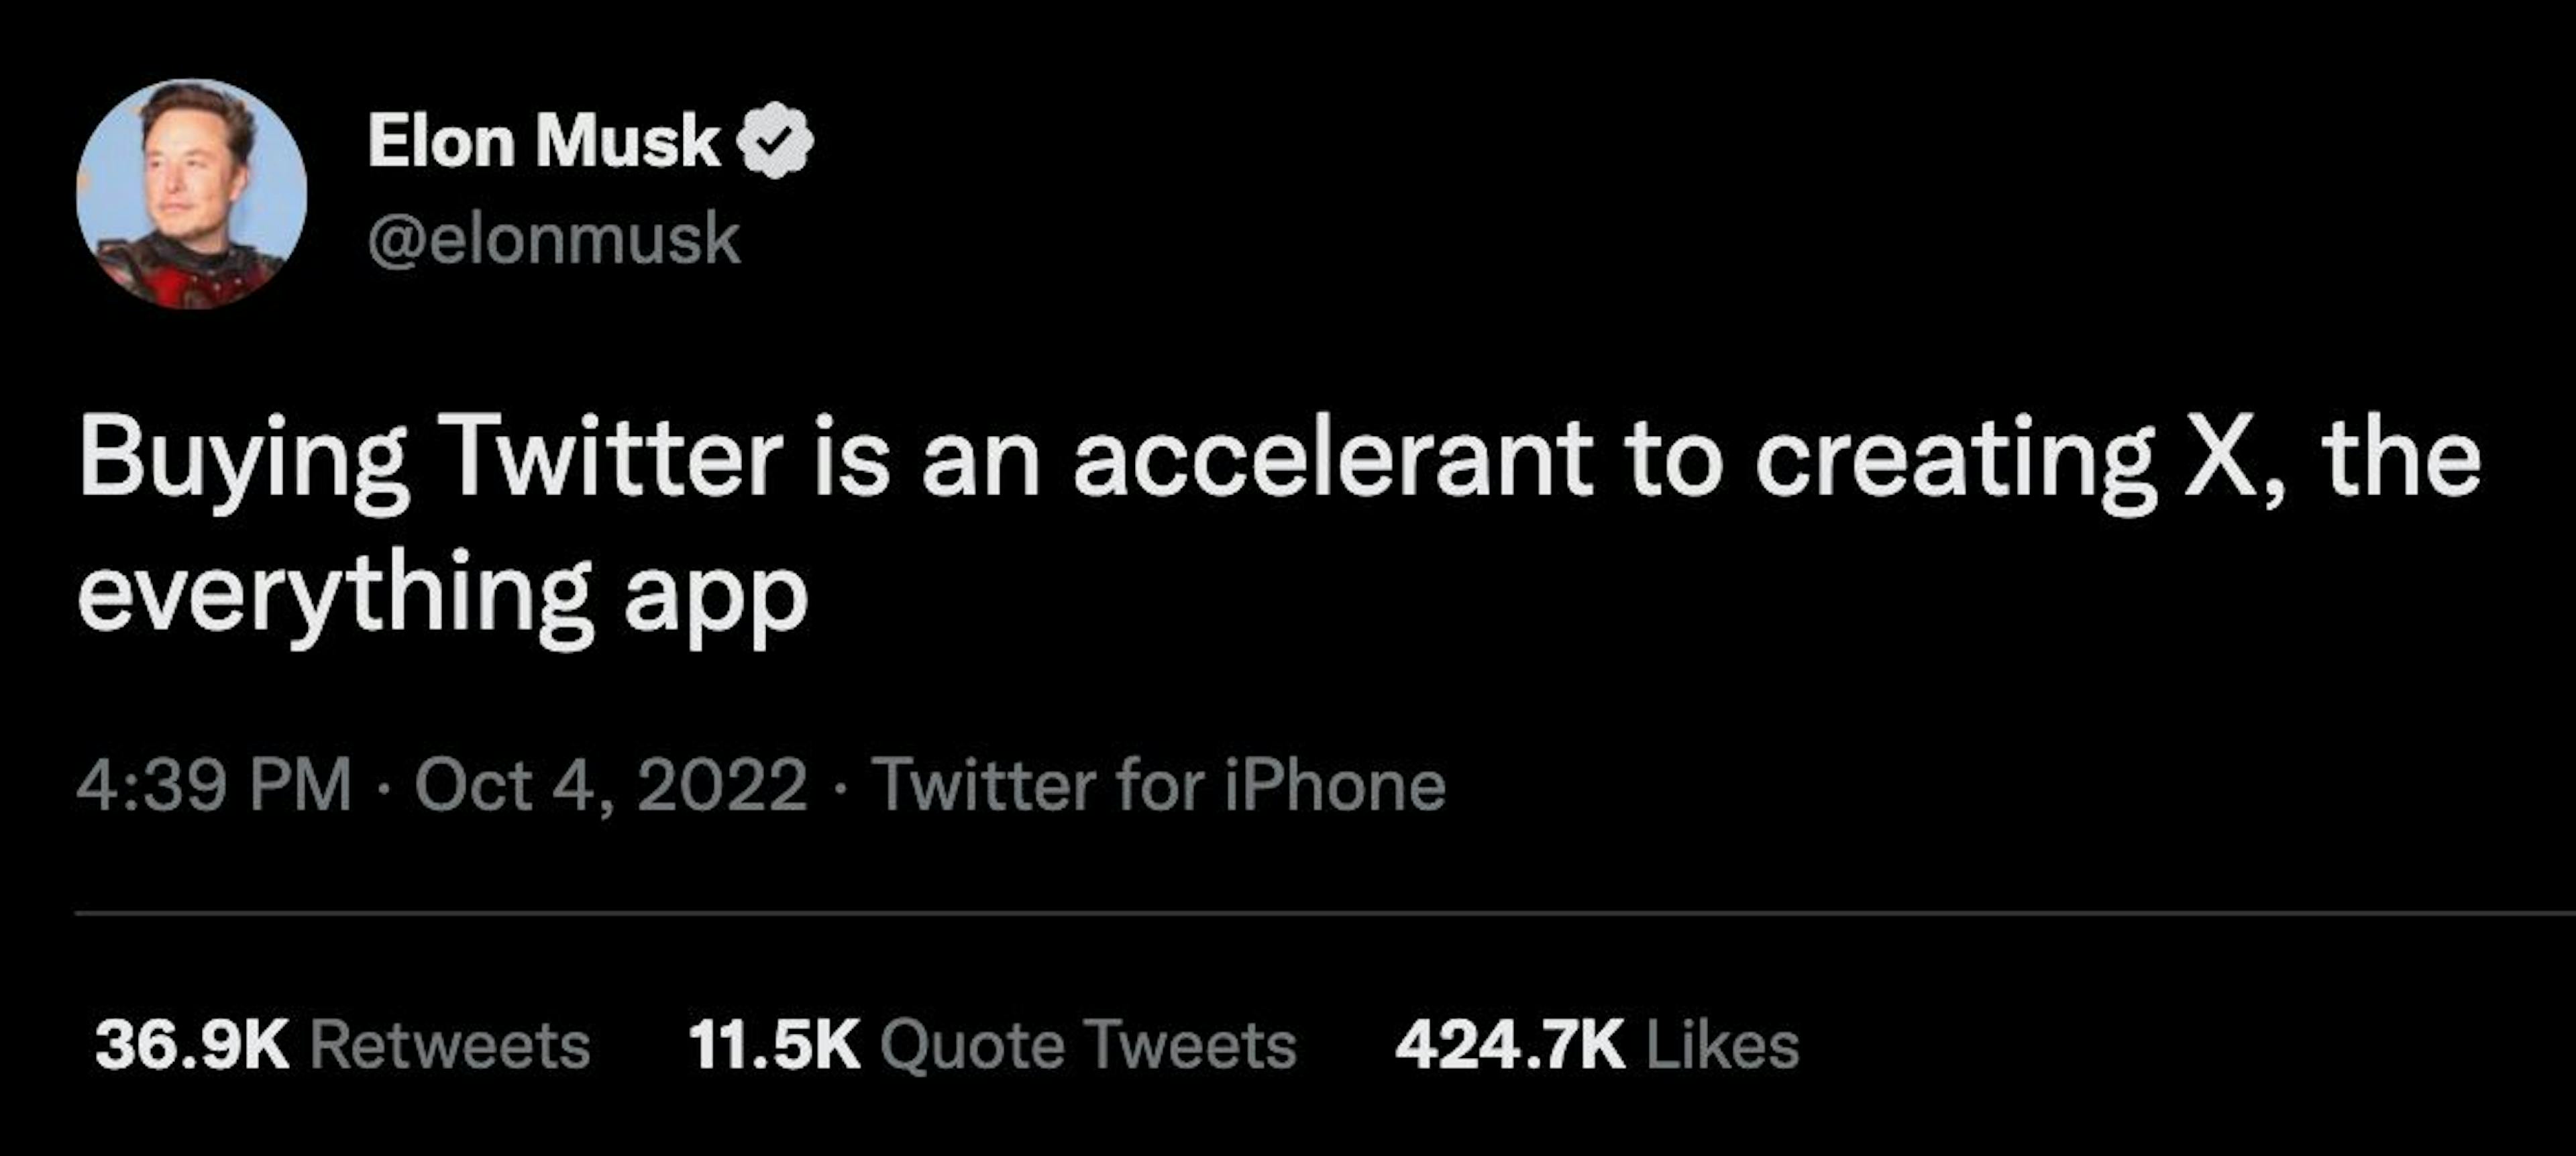 featured image - "L'achat de Twitter est un accélérateur pour créer X, l'application de tout", déclare Elon Musk